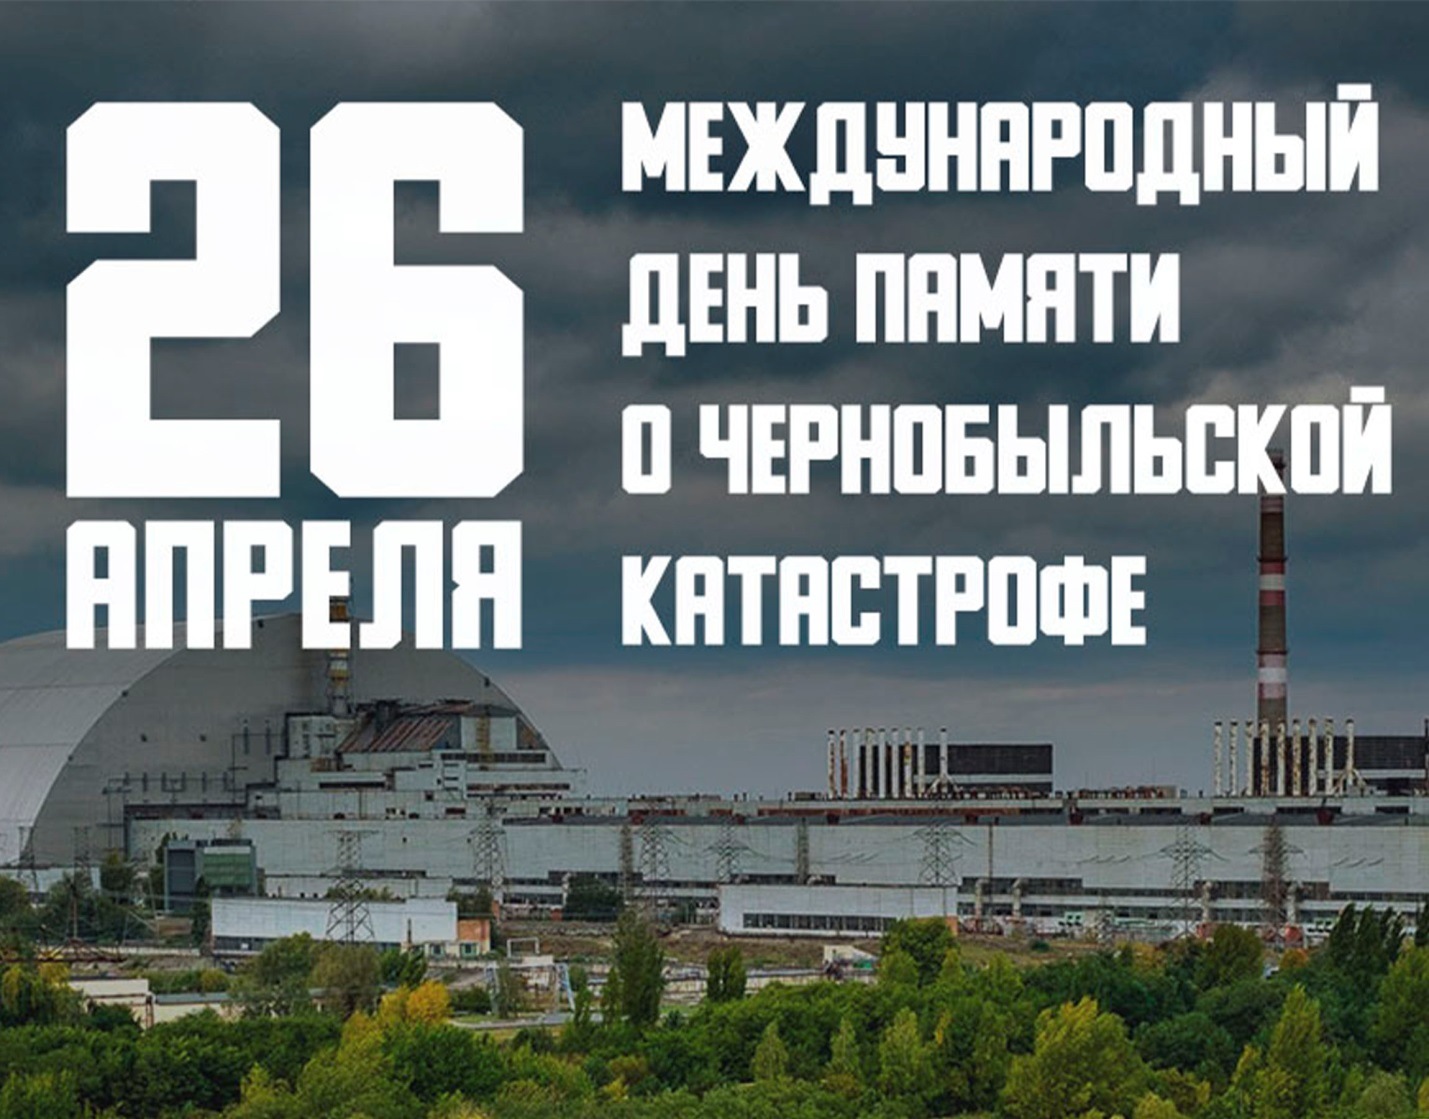 Республиканская декада общественно-патриотических дел "Чернобыль. Сохраняя память..."